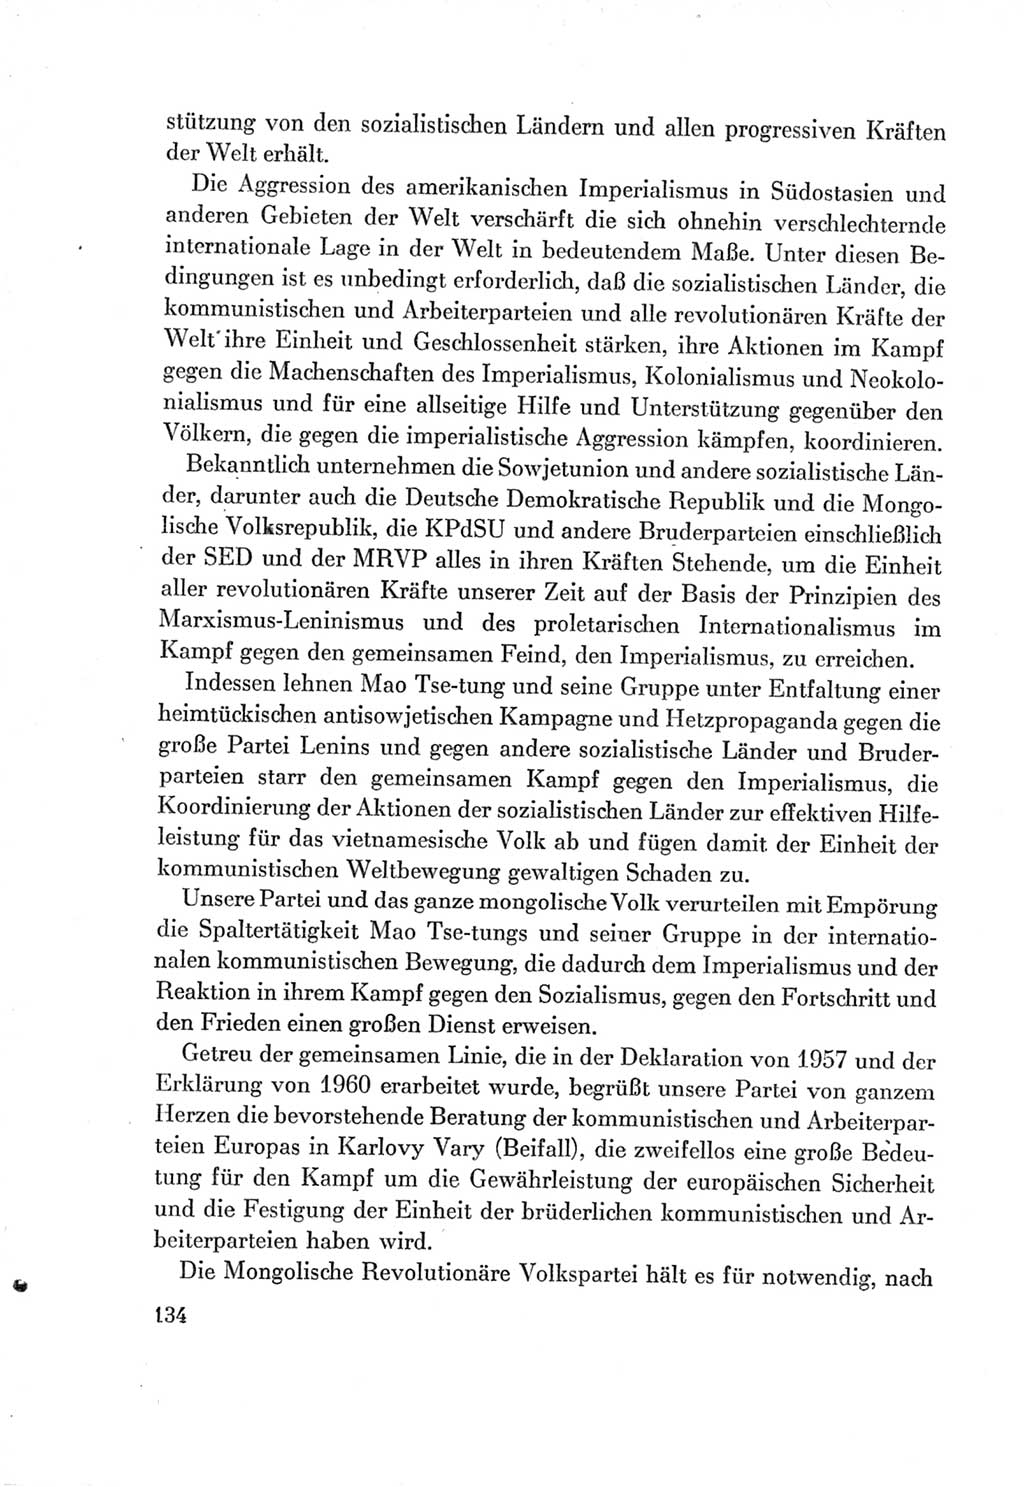 Protokoll der Verhandlungen des Ⅶ. Parteitages der Sozialistischen Einheitspartei Deutschlands (SED) [Deutsche Demokratische Republik (DDR)] 1967, Band Ⅱ, Seite 134 (Prot. Verh. Ⅶ. PT SED DDR 1967, Bd. Ⅱ, S. 134)